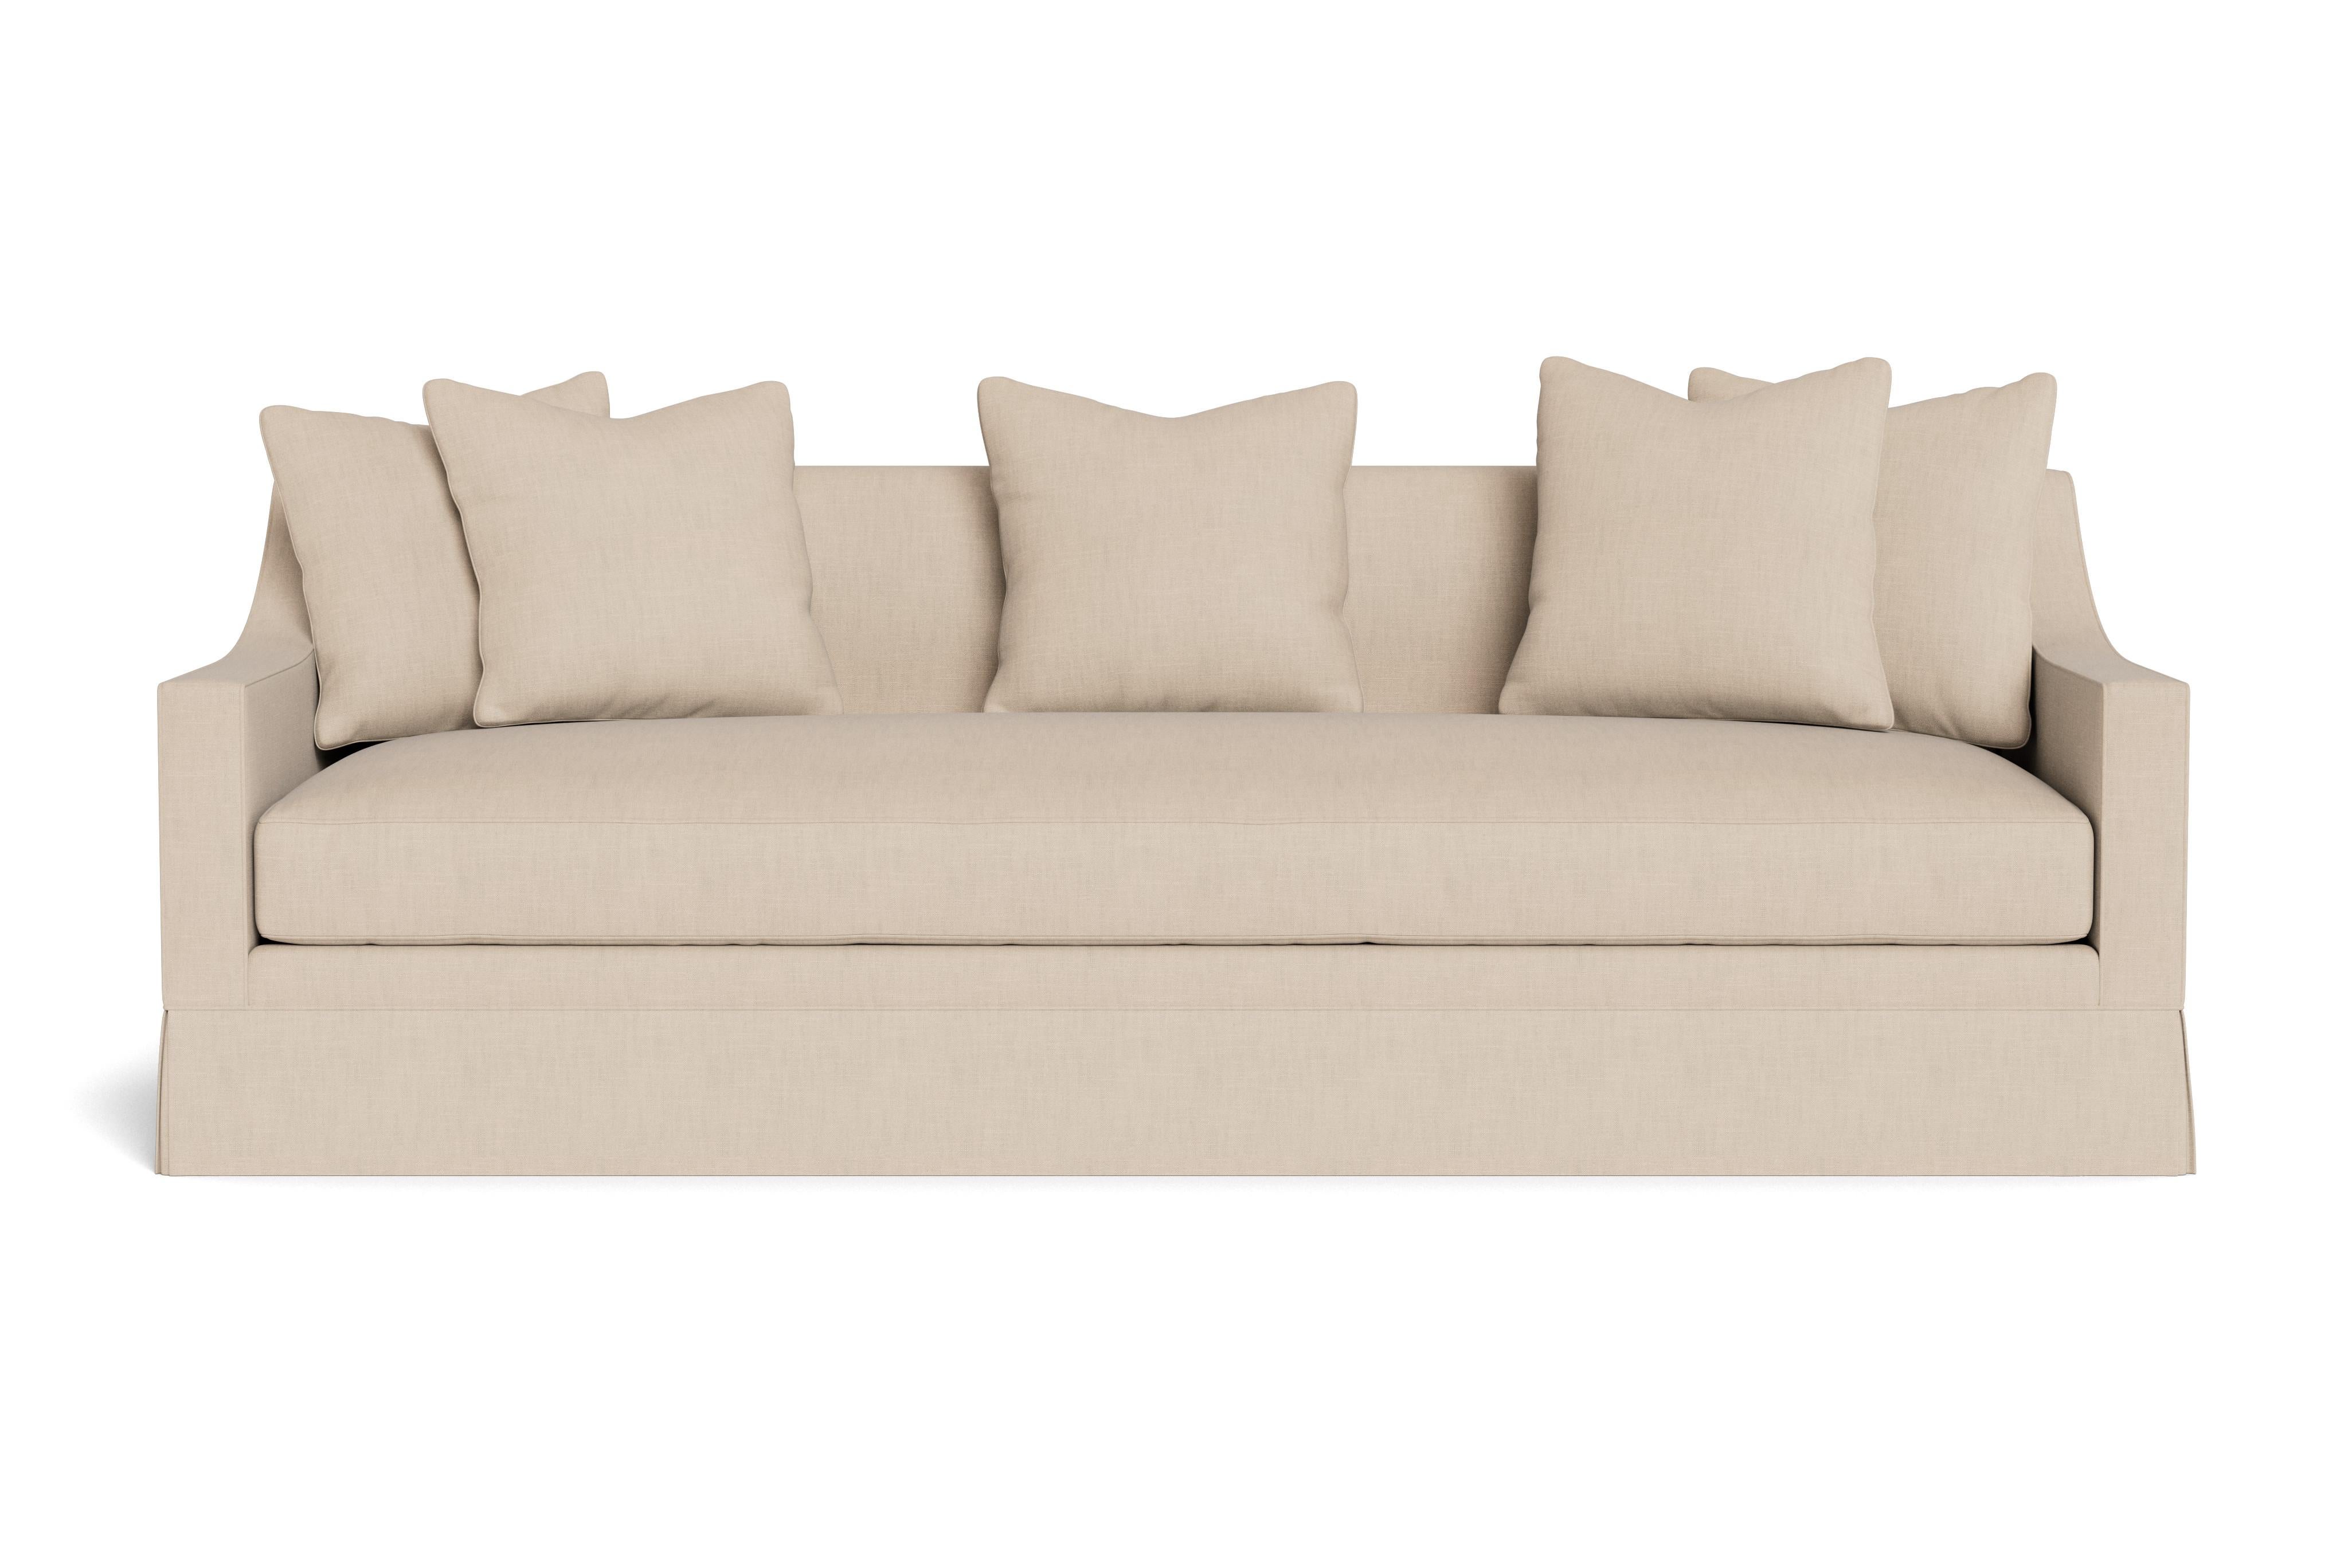 Ein hübsches, modernes Sofa mit abgeschrägten Armlehnen. Elegantes Schnittmuster, ergänzt durch ein einzelnes Sitzkissen und vier lose Kissen (21